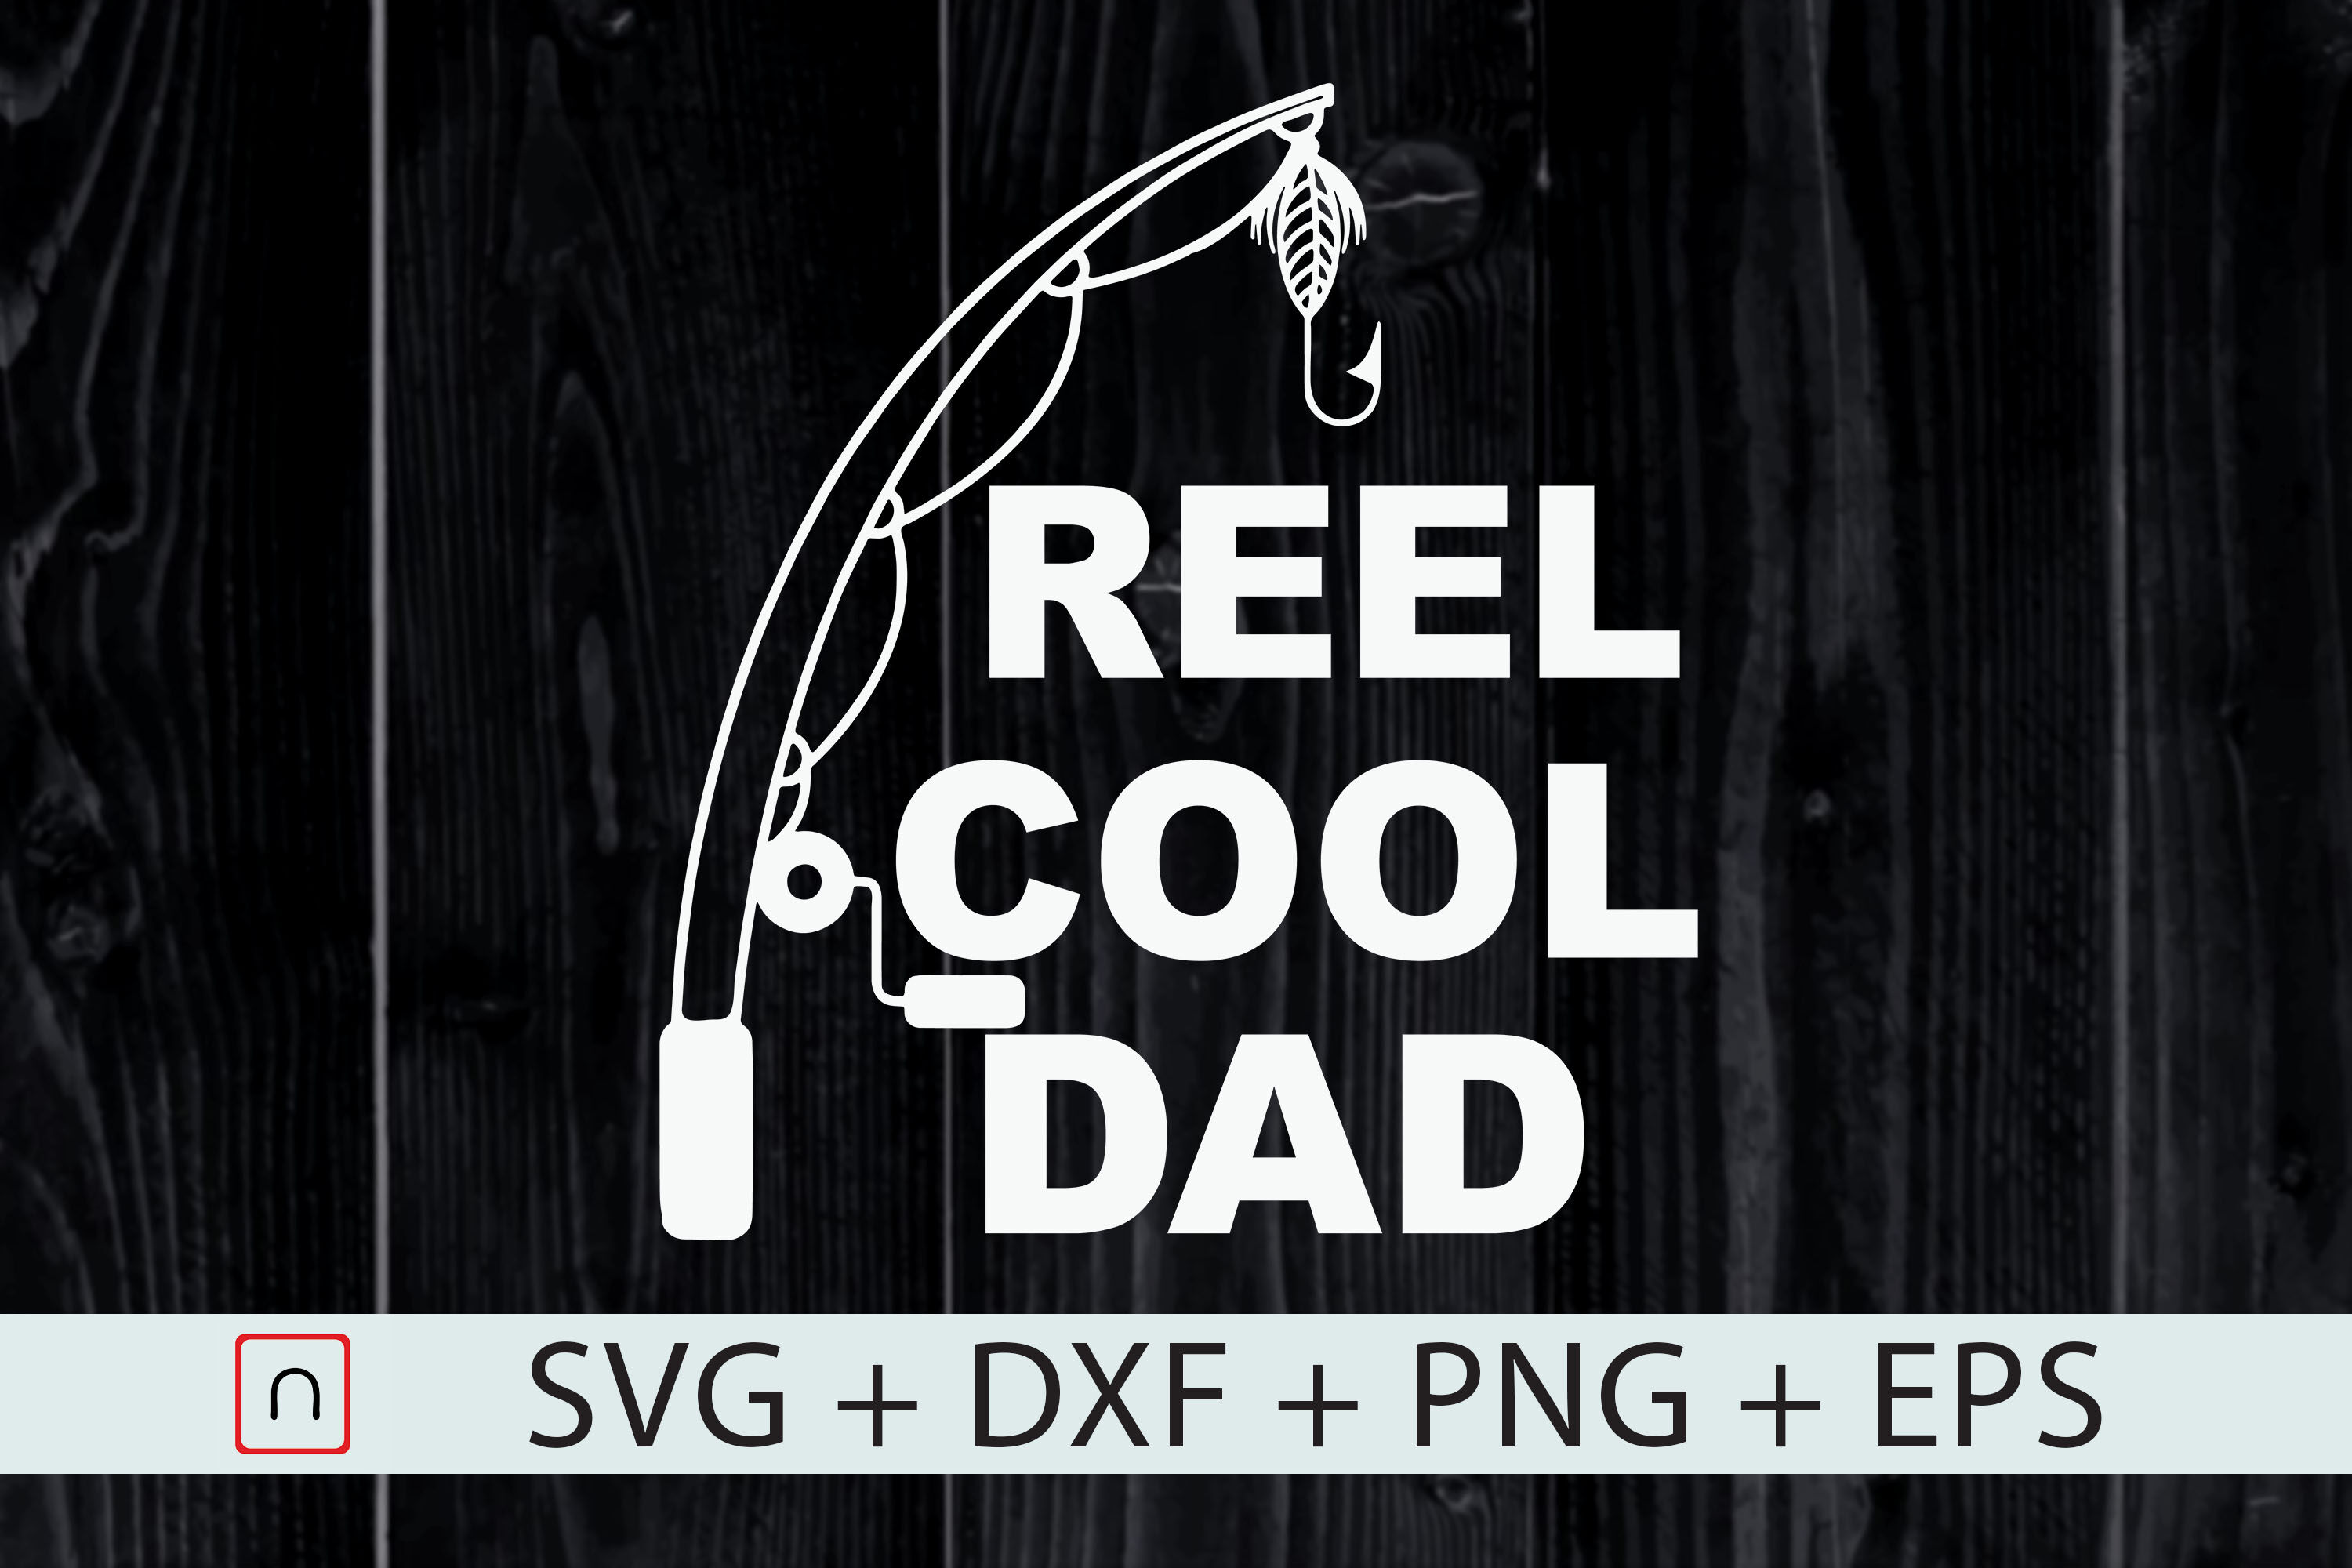 Free Free Fishing Dad Svg Free 517 SVG PNG EPS DXF File